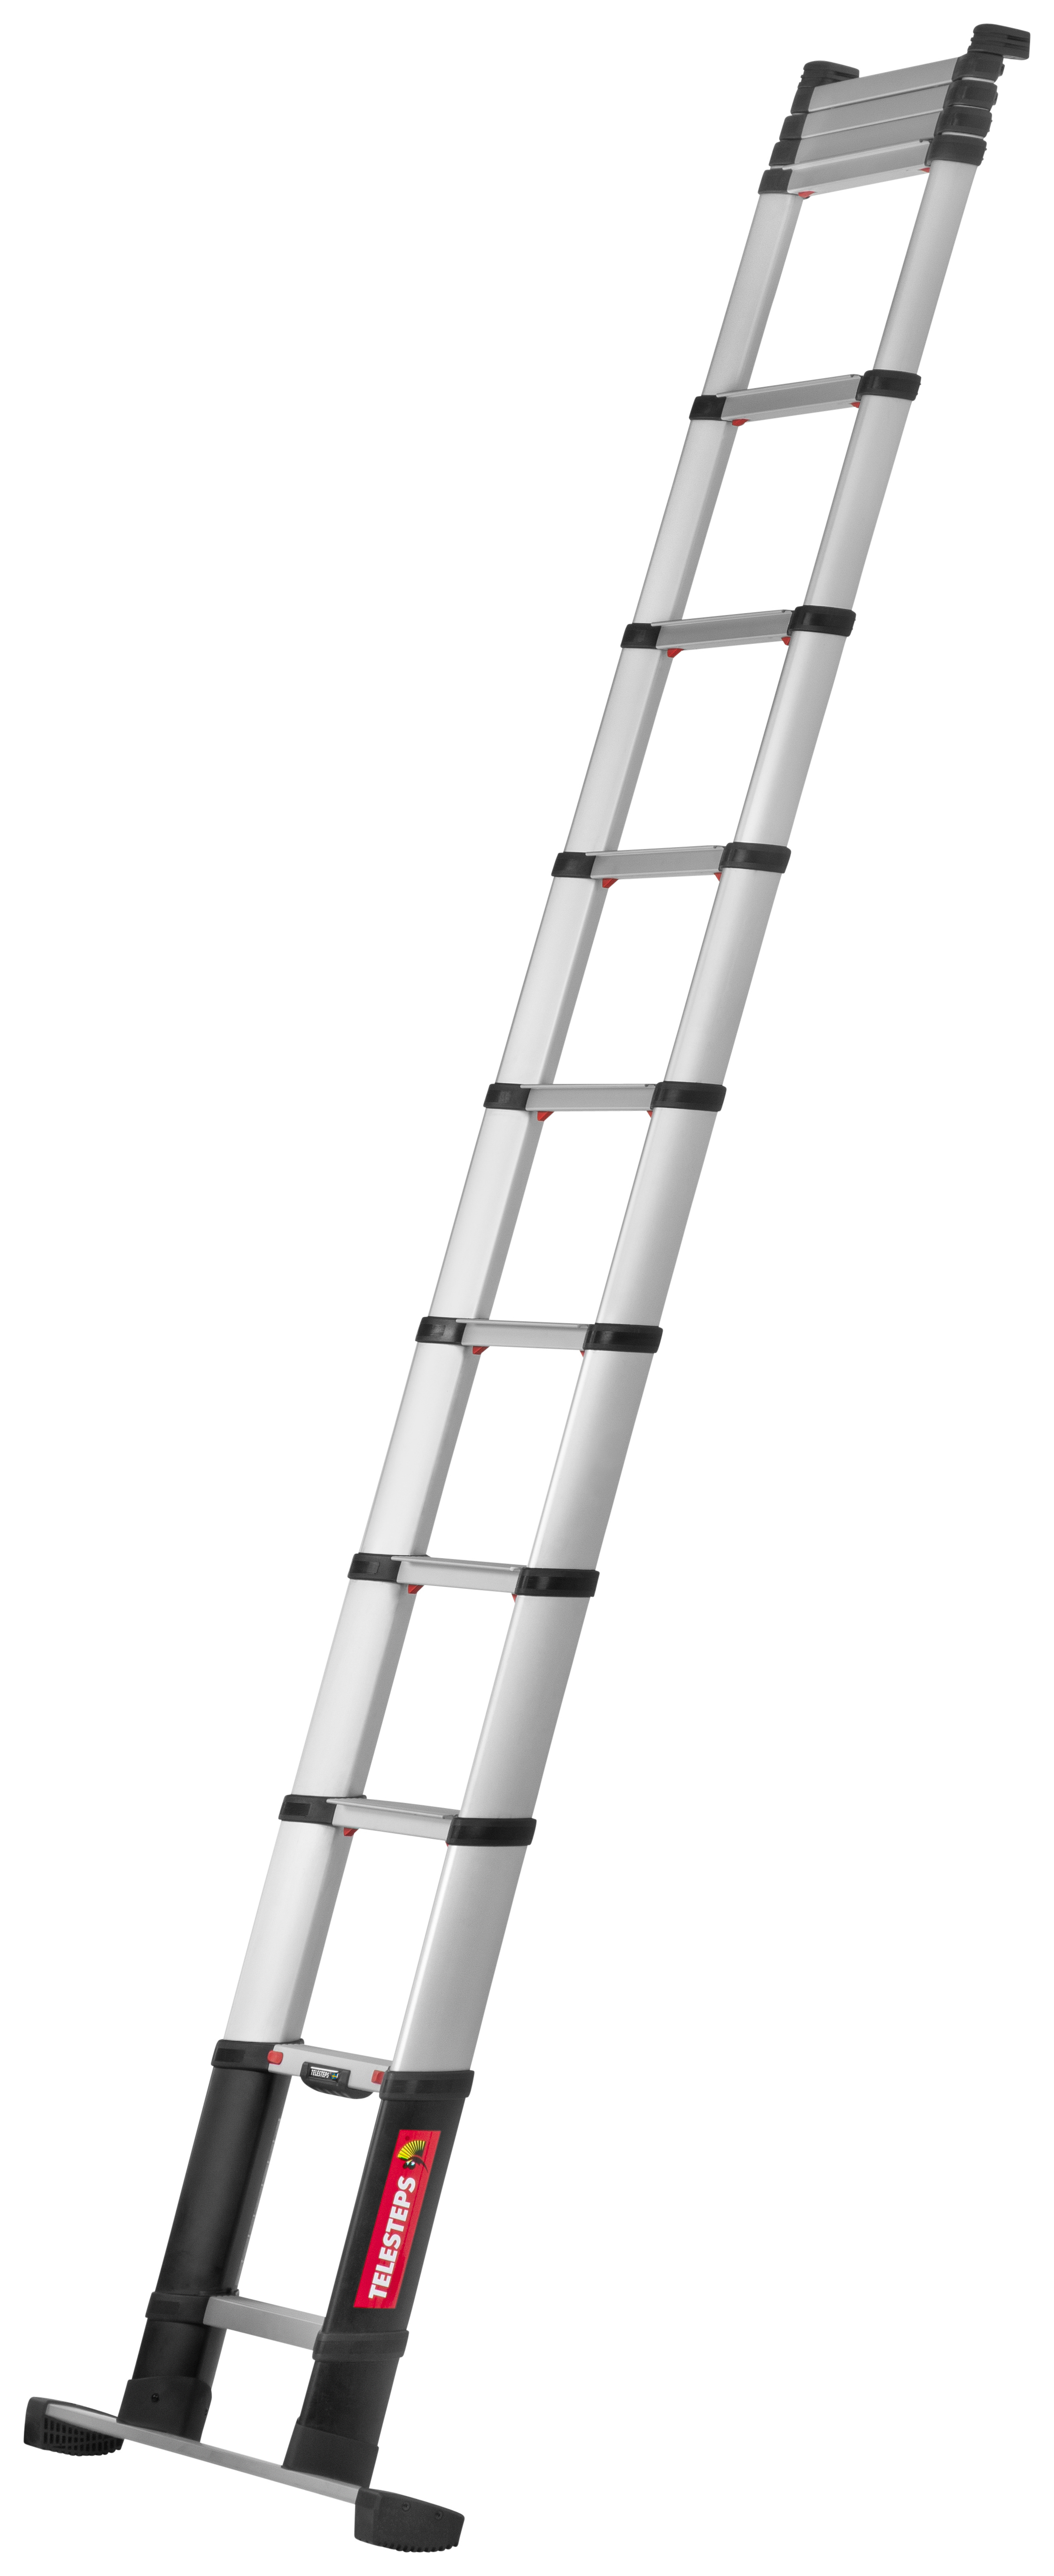 Telesteps Prime Line 4.1m Aluminium Telescopic Ladder with